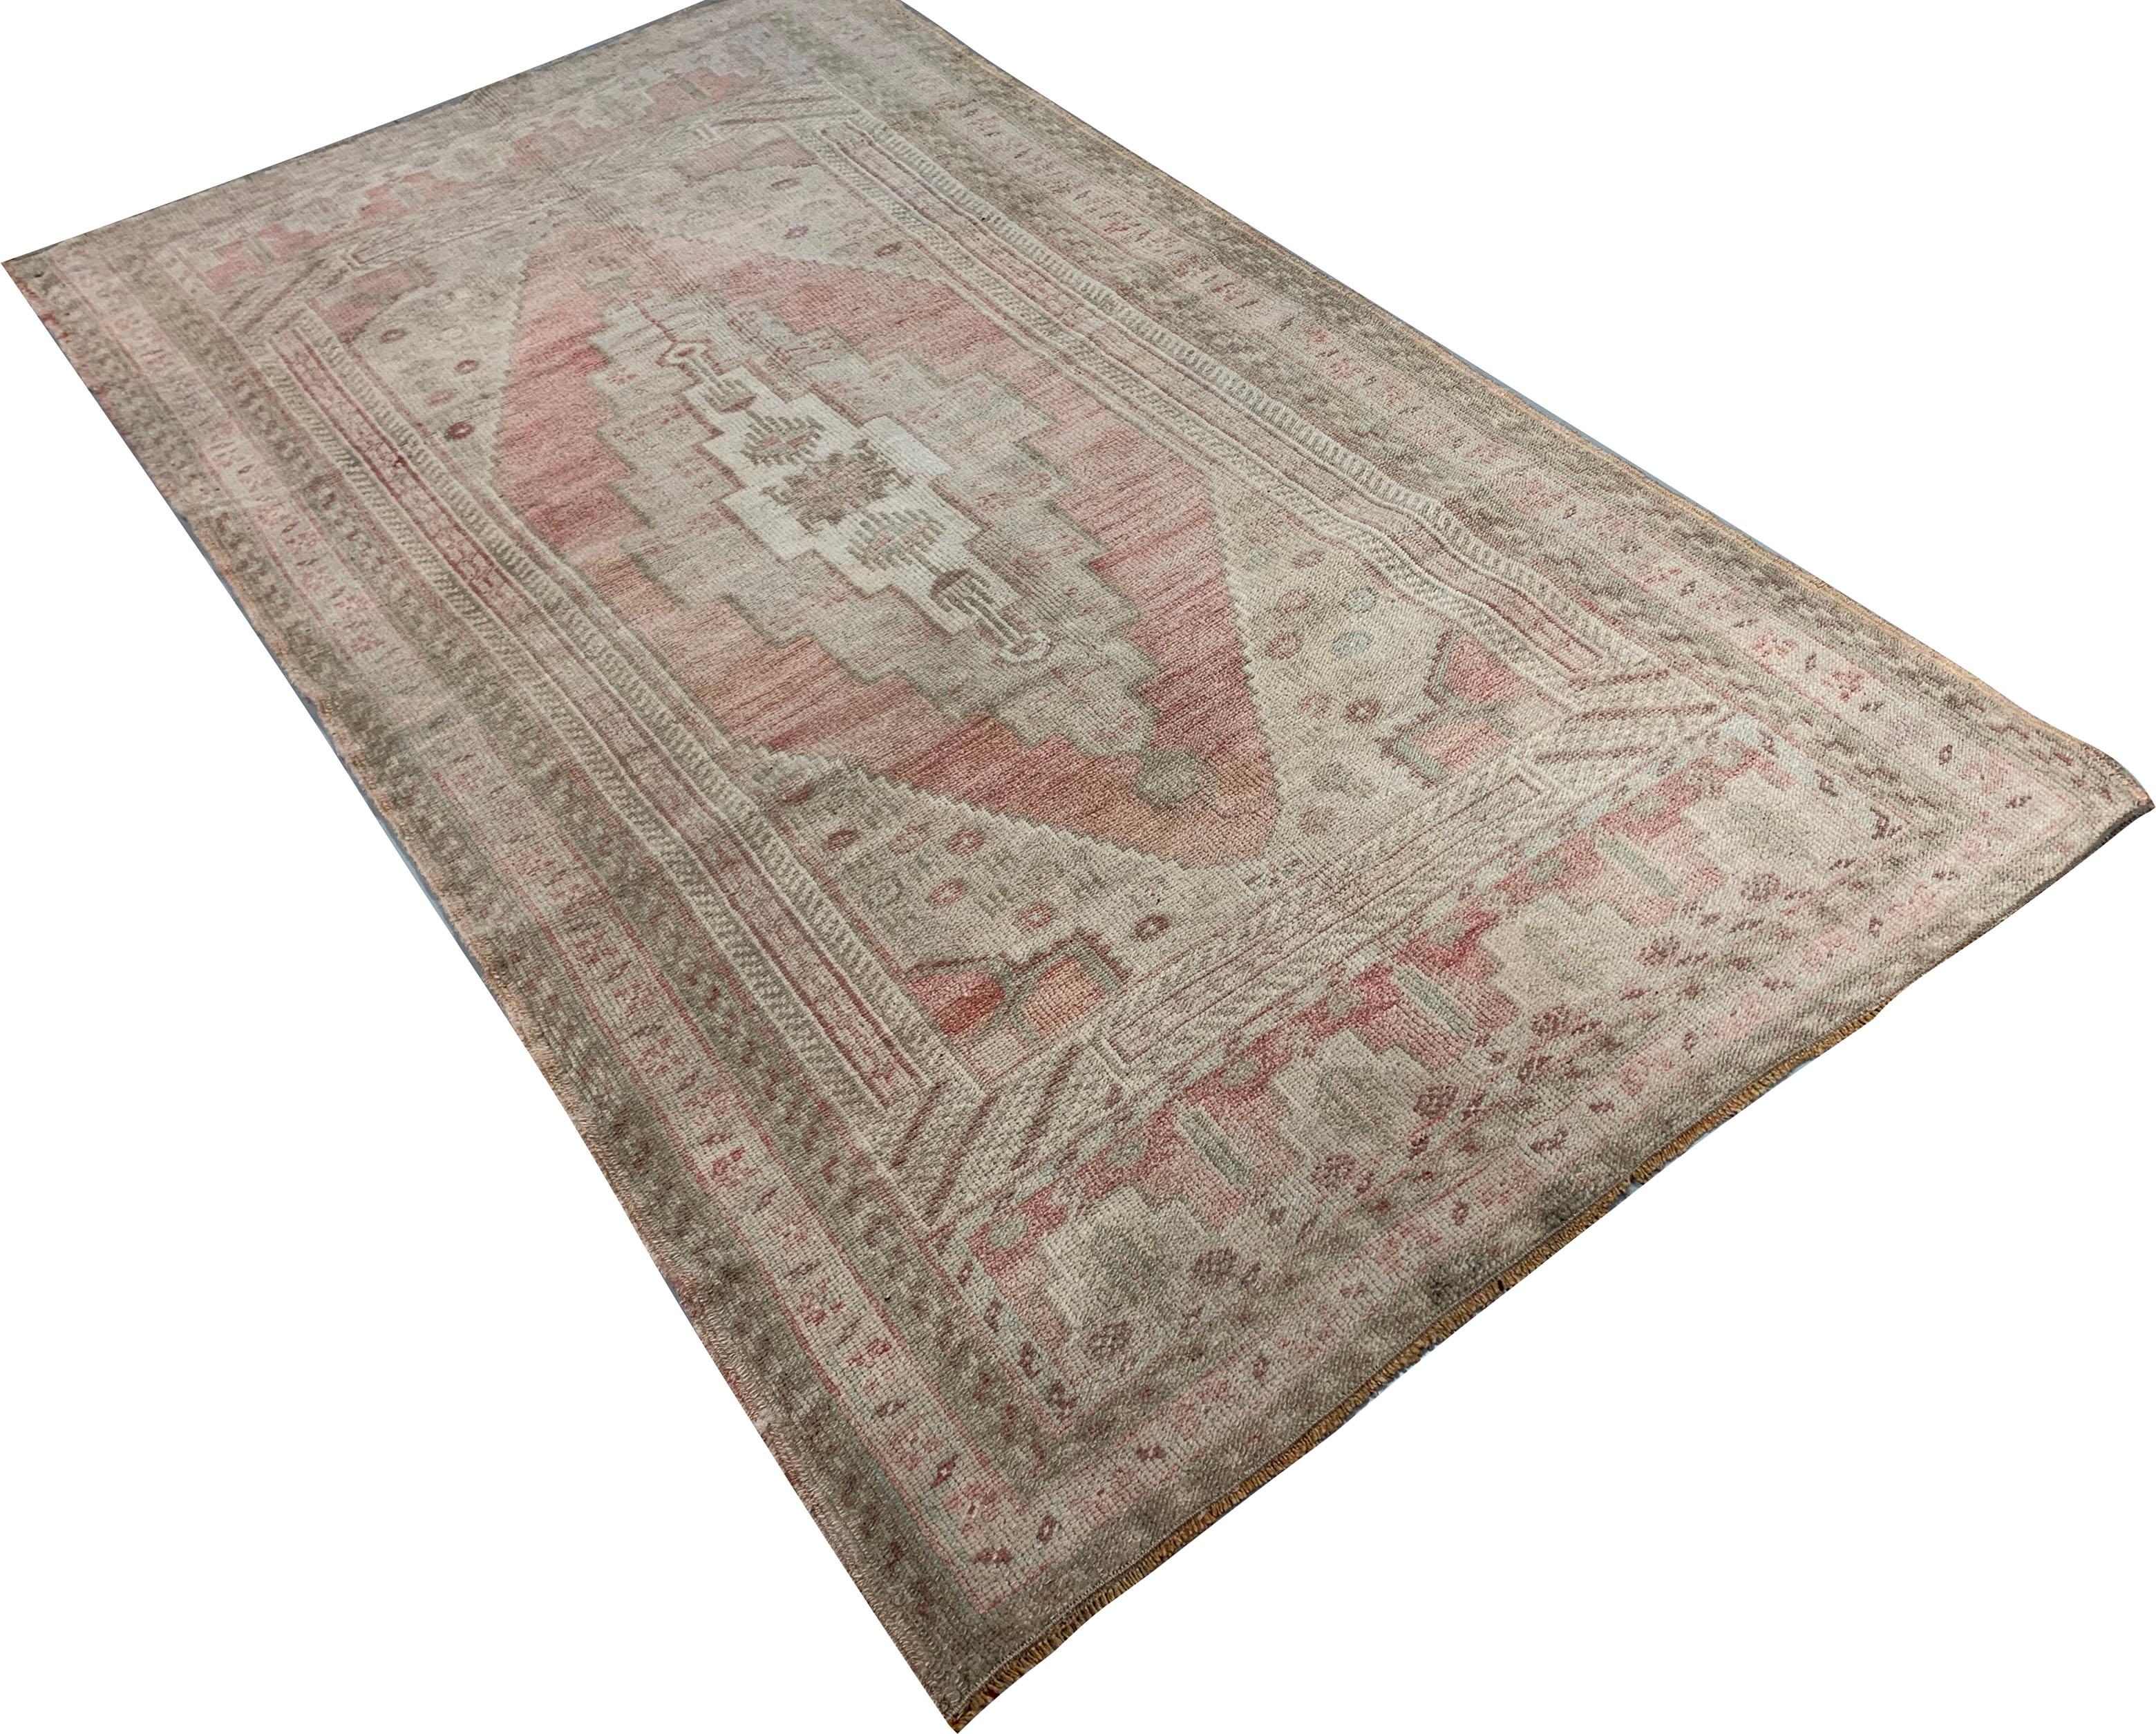 Tapis turc vintage Oushak, 3'4' x 6'1'. Les Oushak sont connus pour leurs palettes douces combinées à un dessin excentrique. C'est à Oushak, dans l'ouest de la Turquie, que l'on trouve la plus longue histoire continue de tissage de tapis, remontant